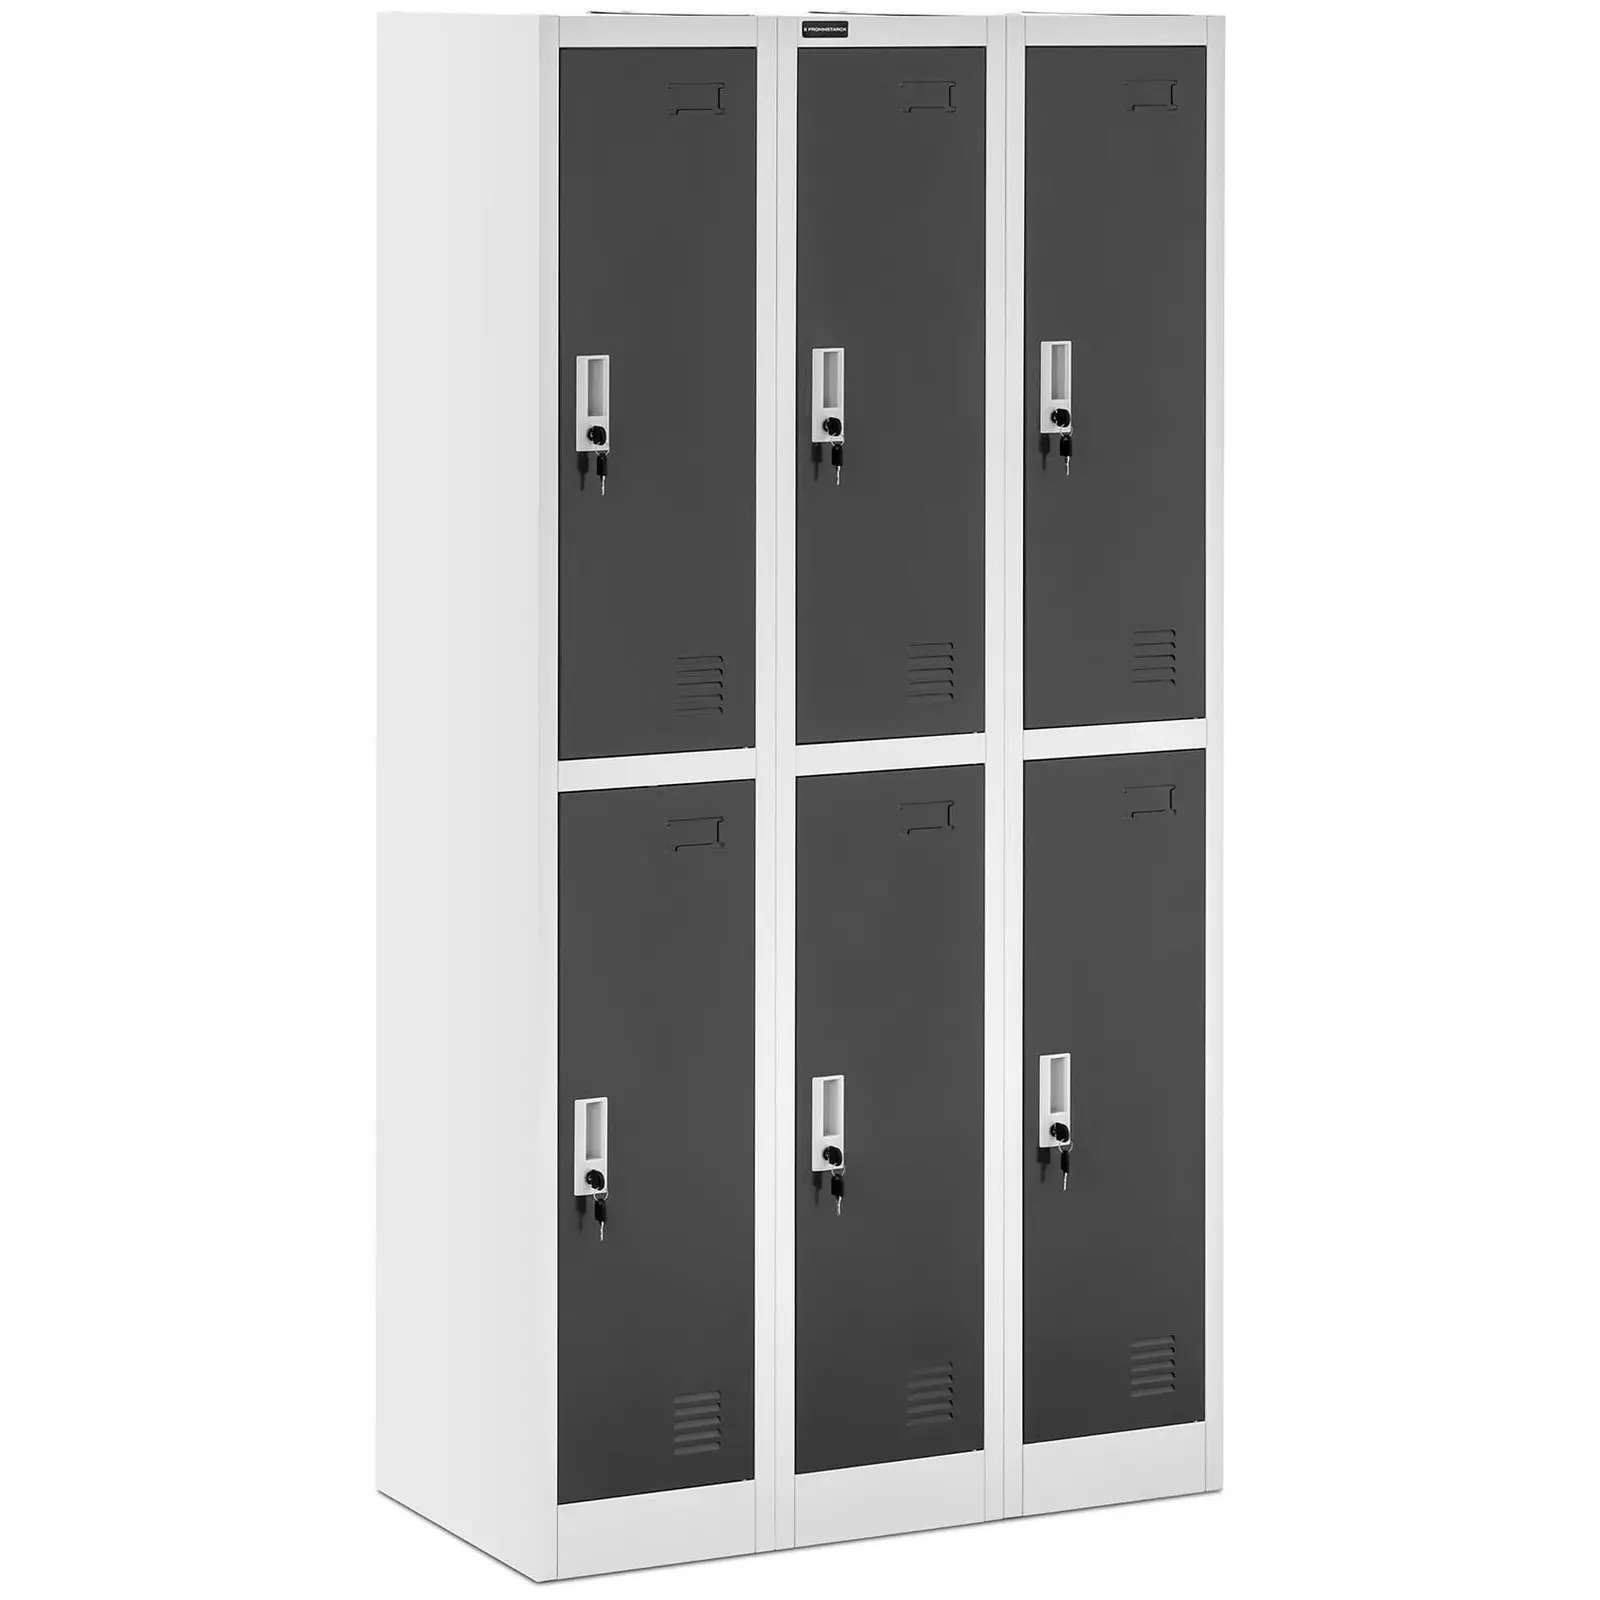 Метално шкафче за съхранение - 6 шкафчета - сиво